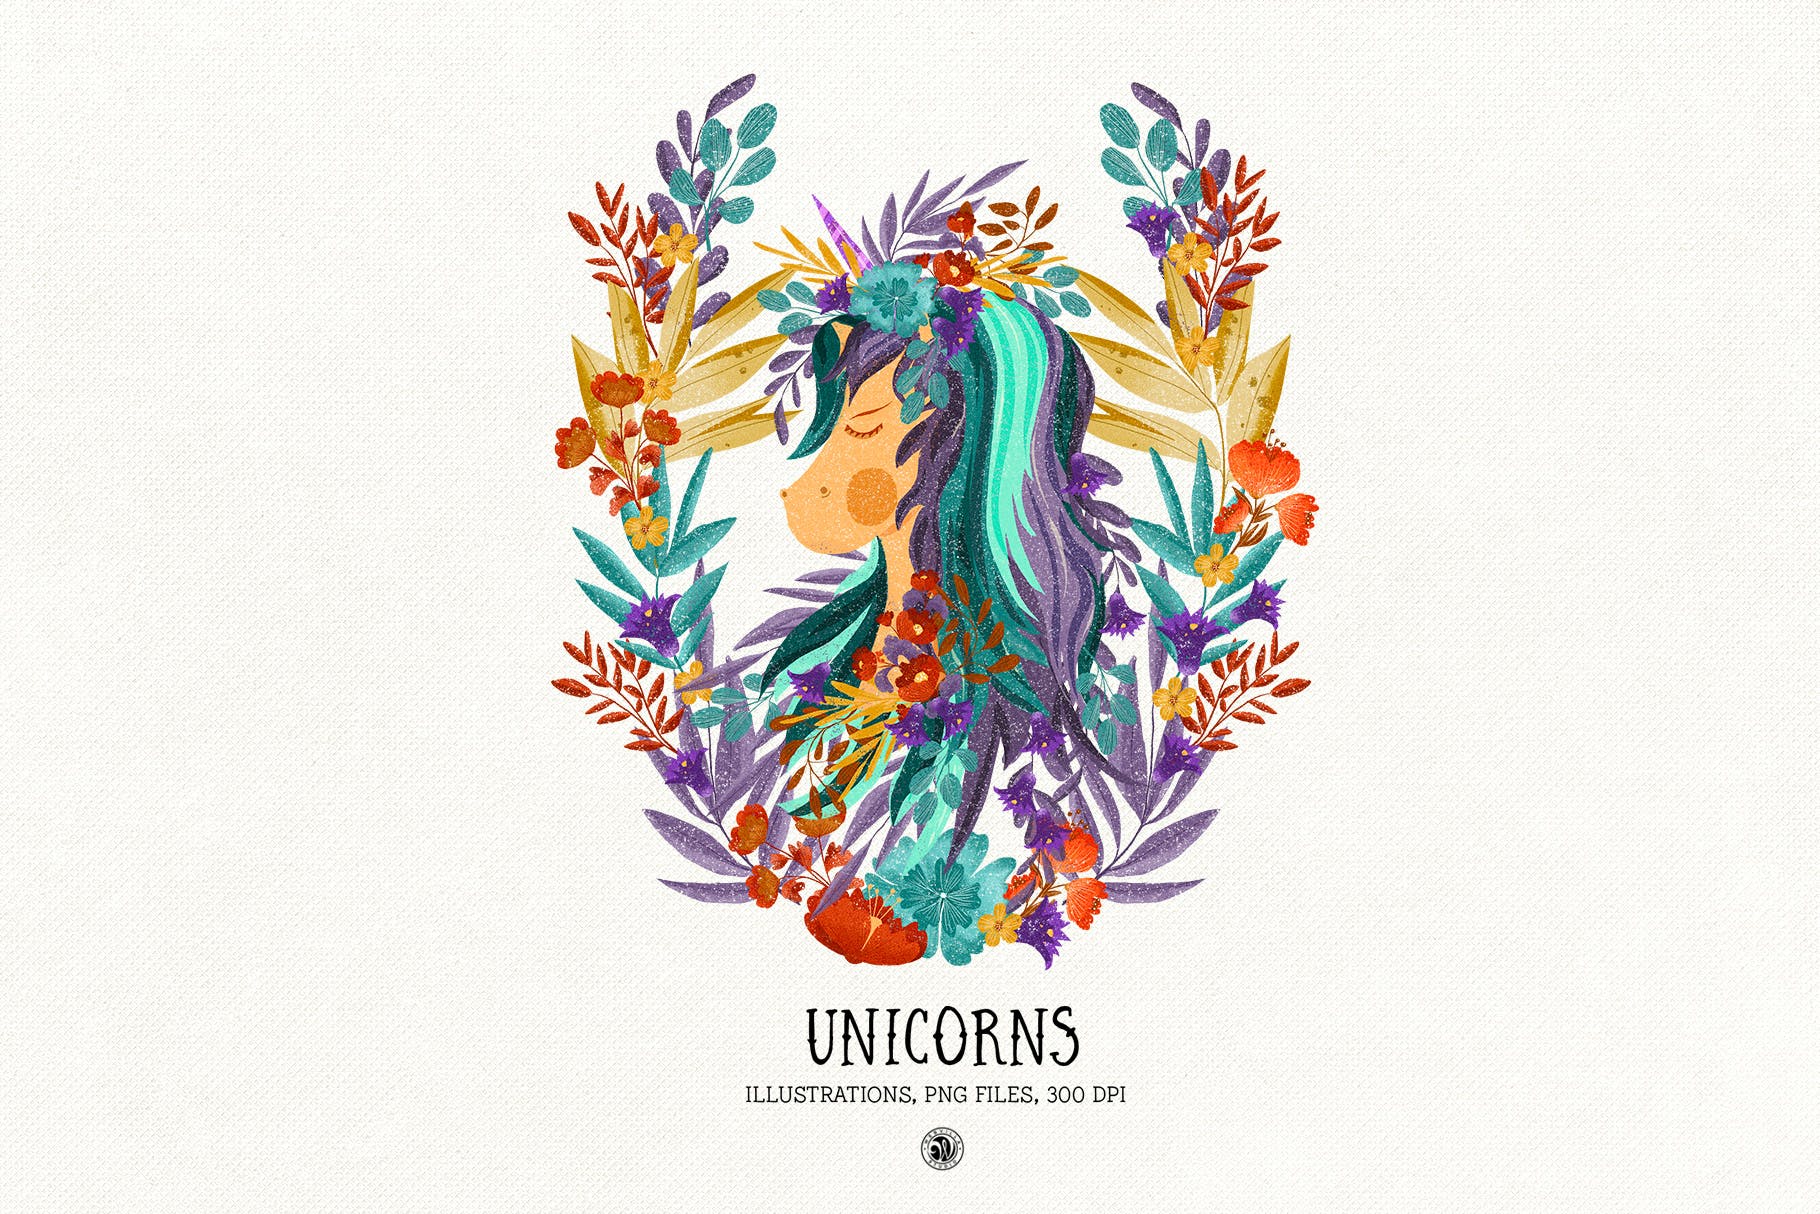 色彩丰富的独角兽素材库精选手绘插画矢量素材库精选PNG素材 Unicorns插图(3)